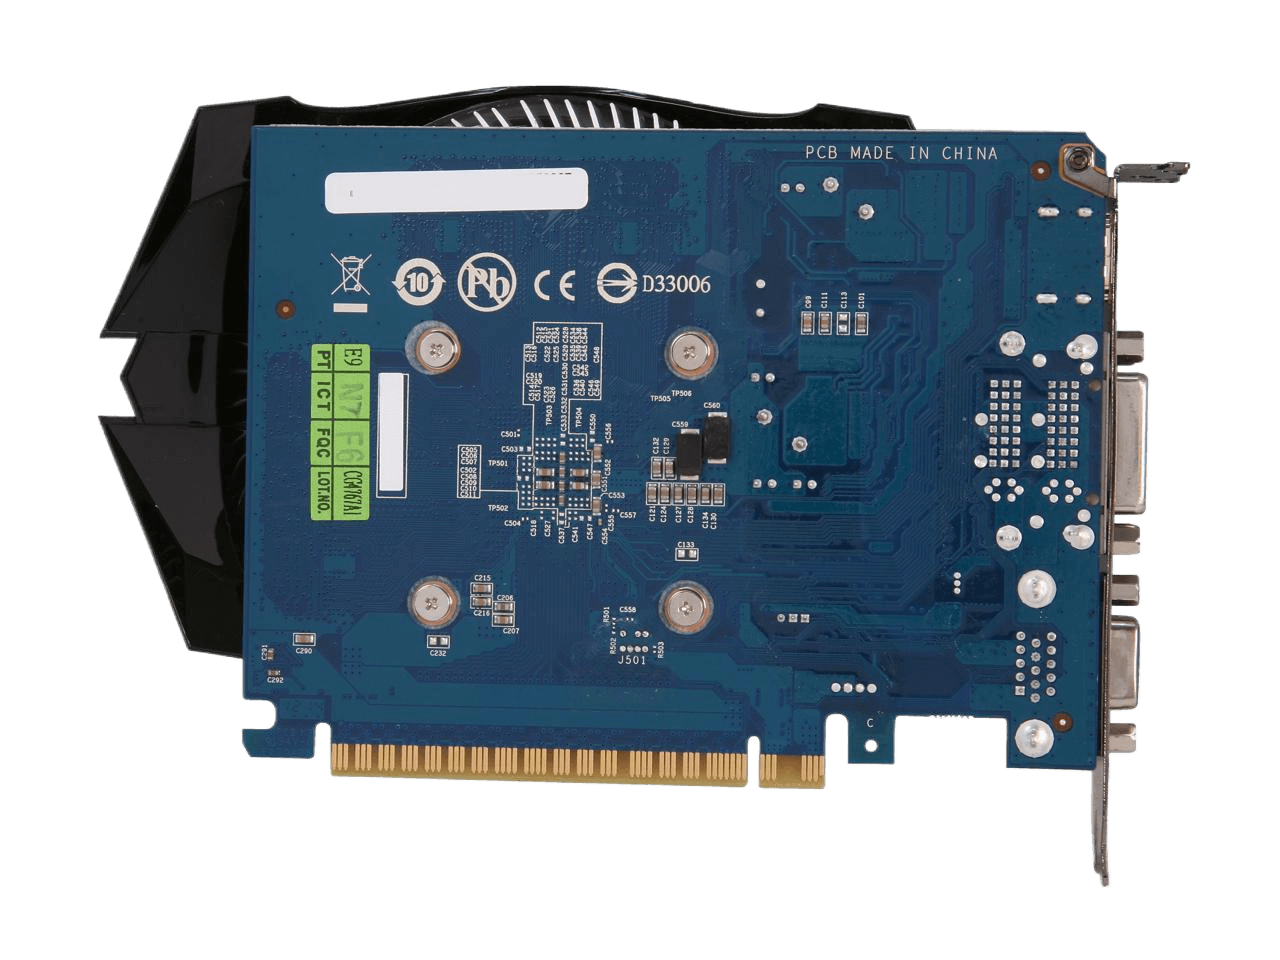 GIGABYTE GeForce GT 640 2GB DDR3 PCI Express 3.0 x16 Video Card GV-N640OC-2GI